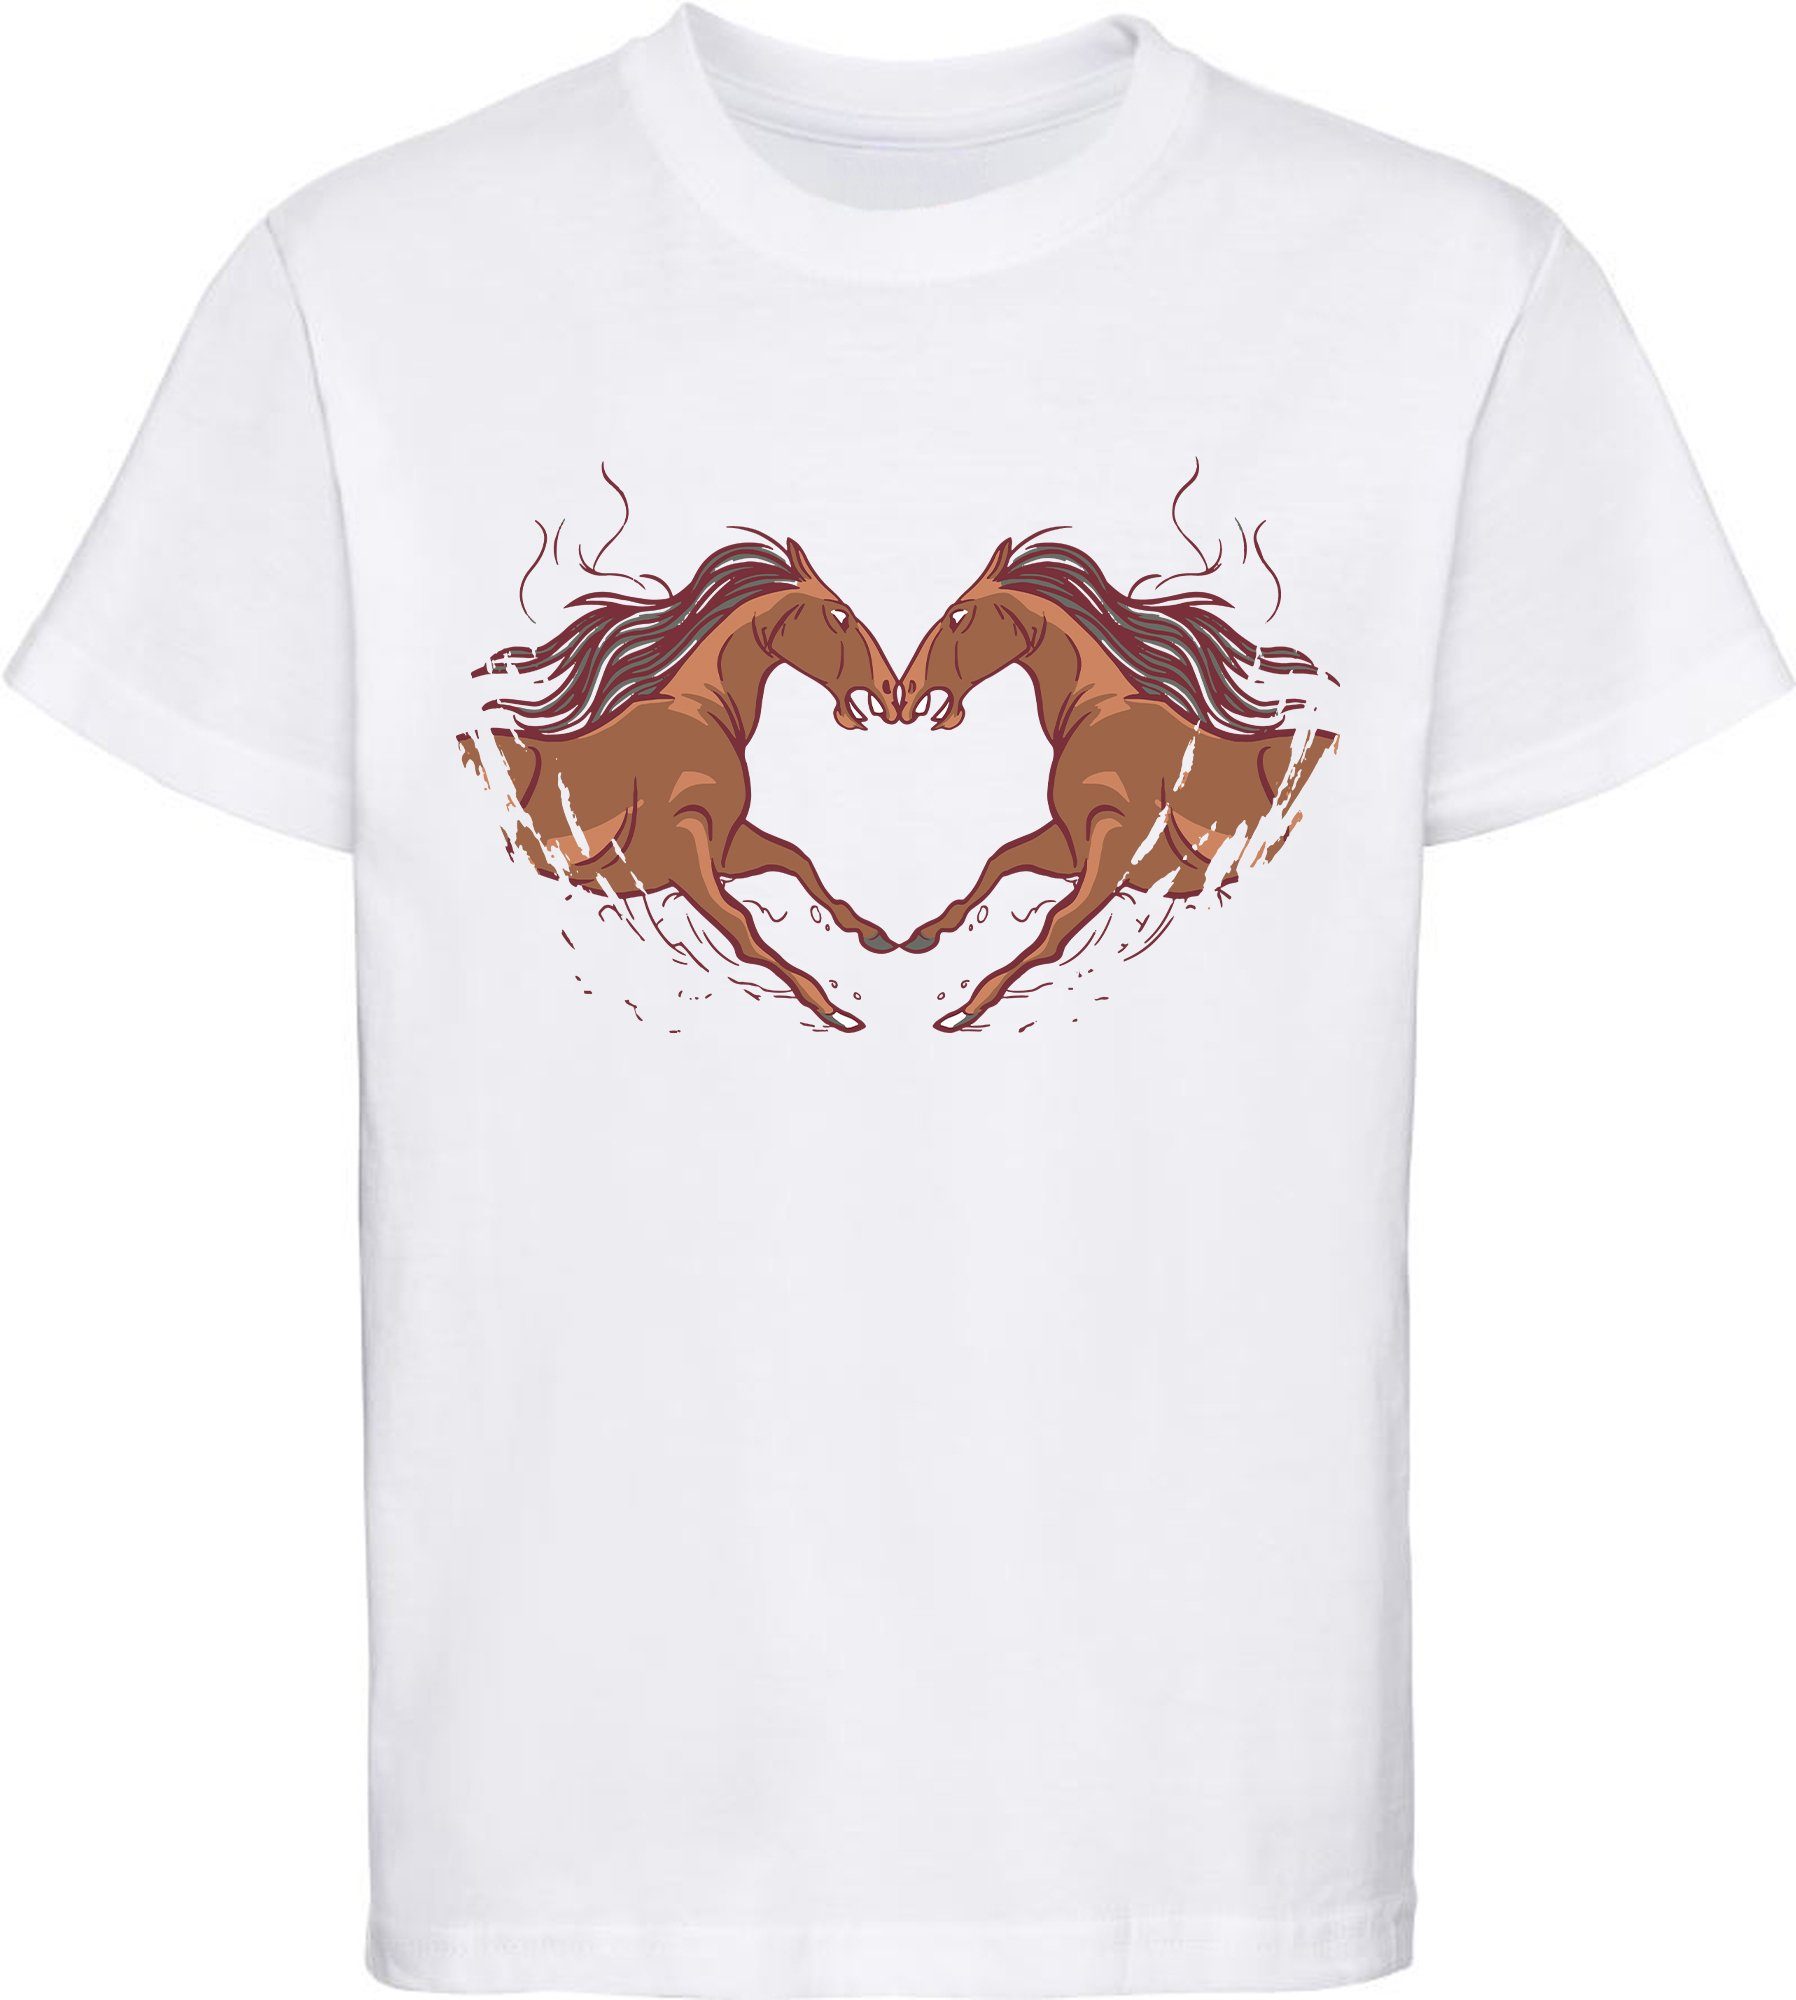 MyDesign24 Print-Shirt bedrucktes Mädchen T-Shirt zwei Pferde die ein Herz ergeben Baumwollshirt mit Aufdruck, weiß, schwarz, rot, rosa, i134 weiss